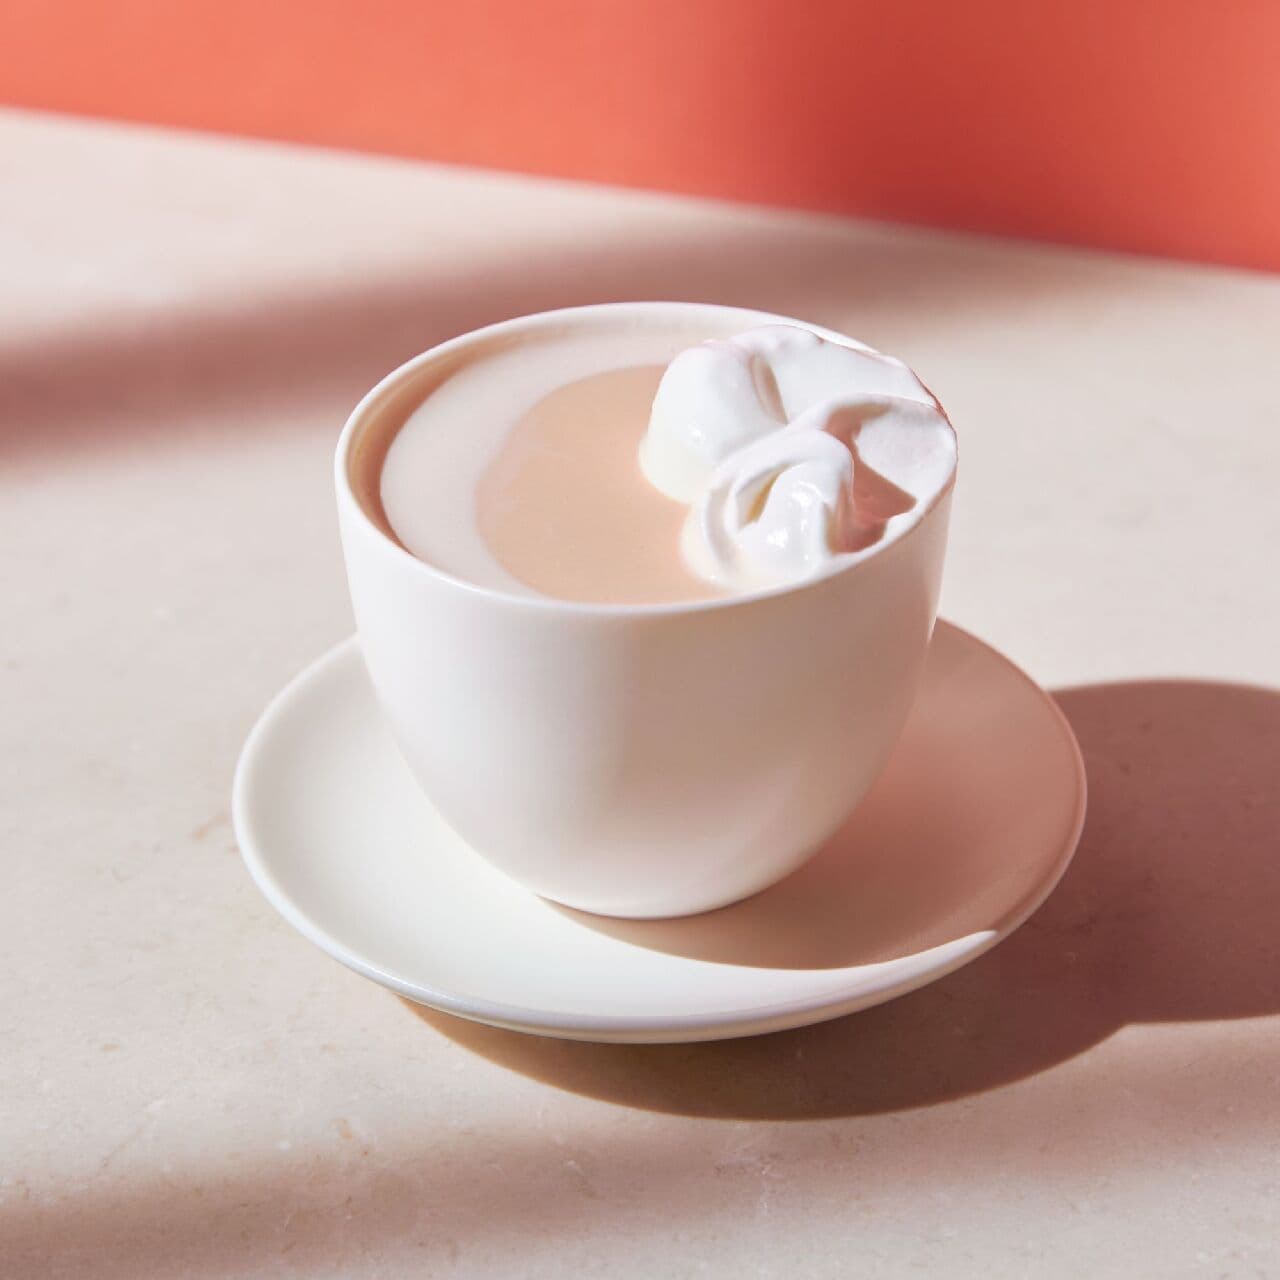 Starbucks Reserve Roastery Tokyo "Shiromiso Rooibos Tea Latte".